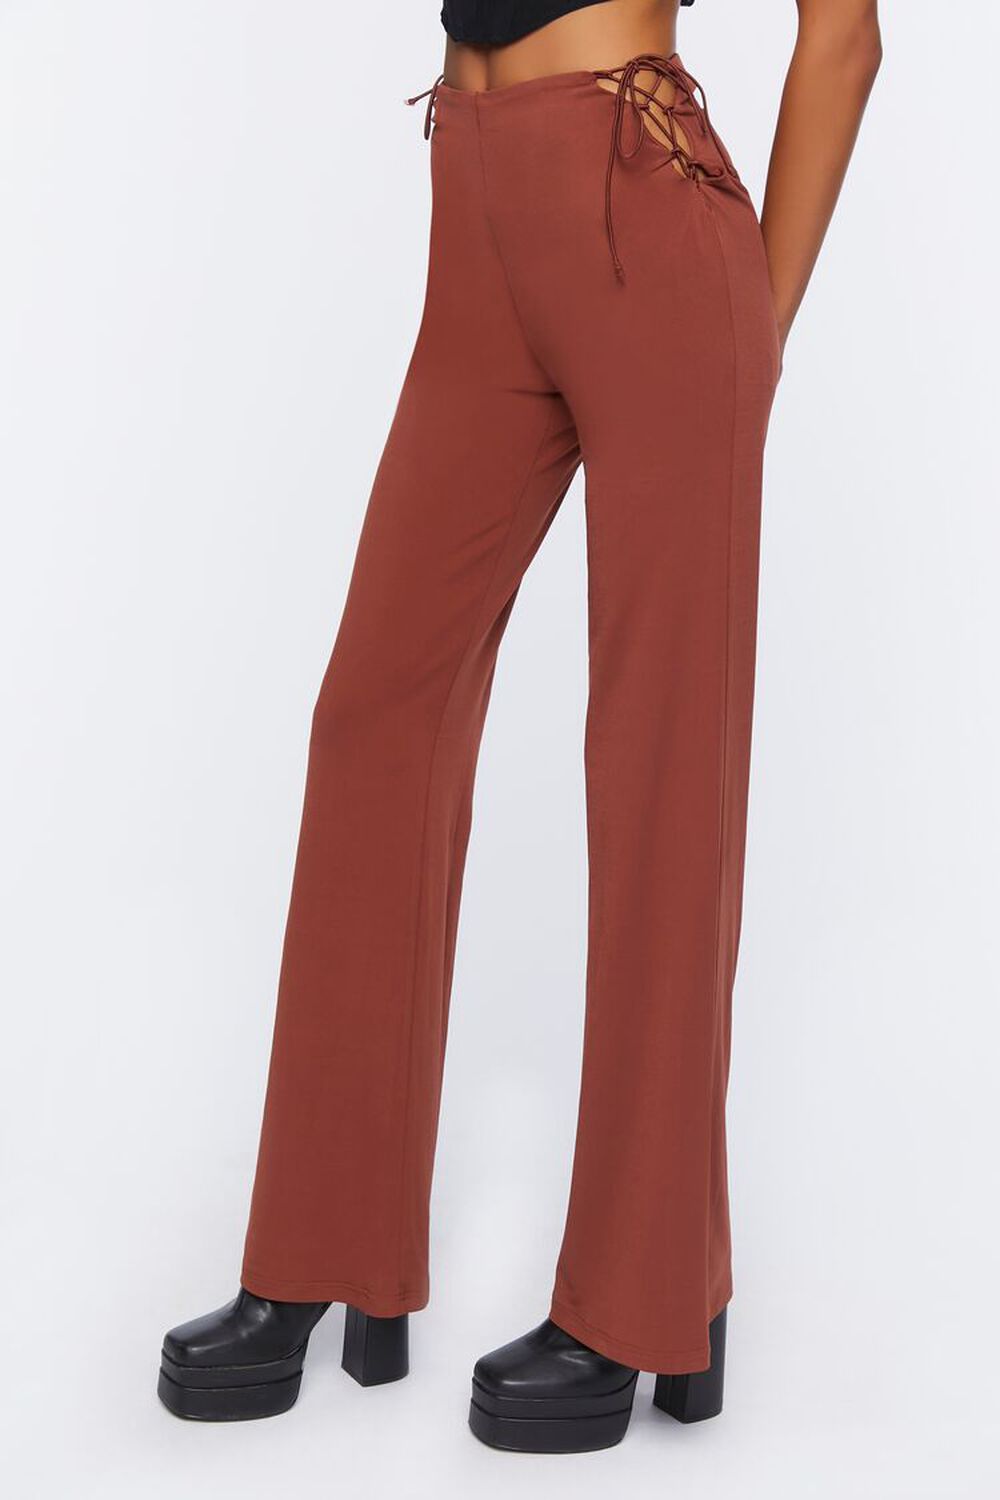 SIENNA Cutout Drawstring Pants, image 3